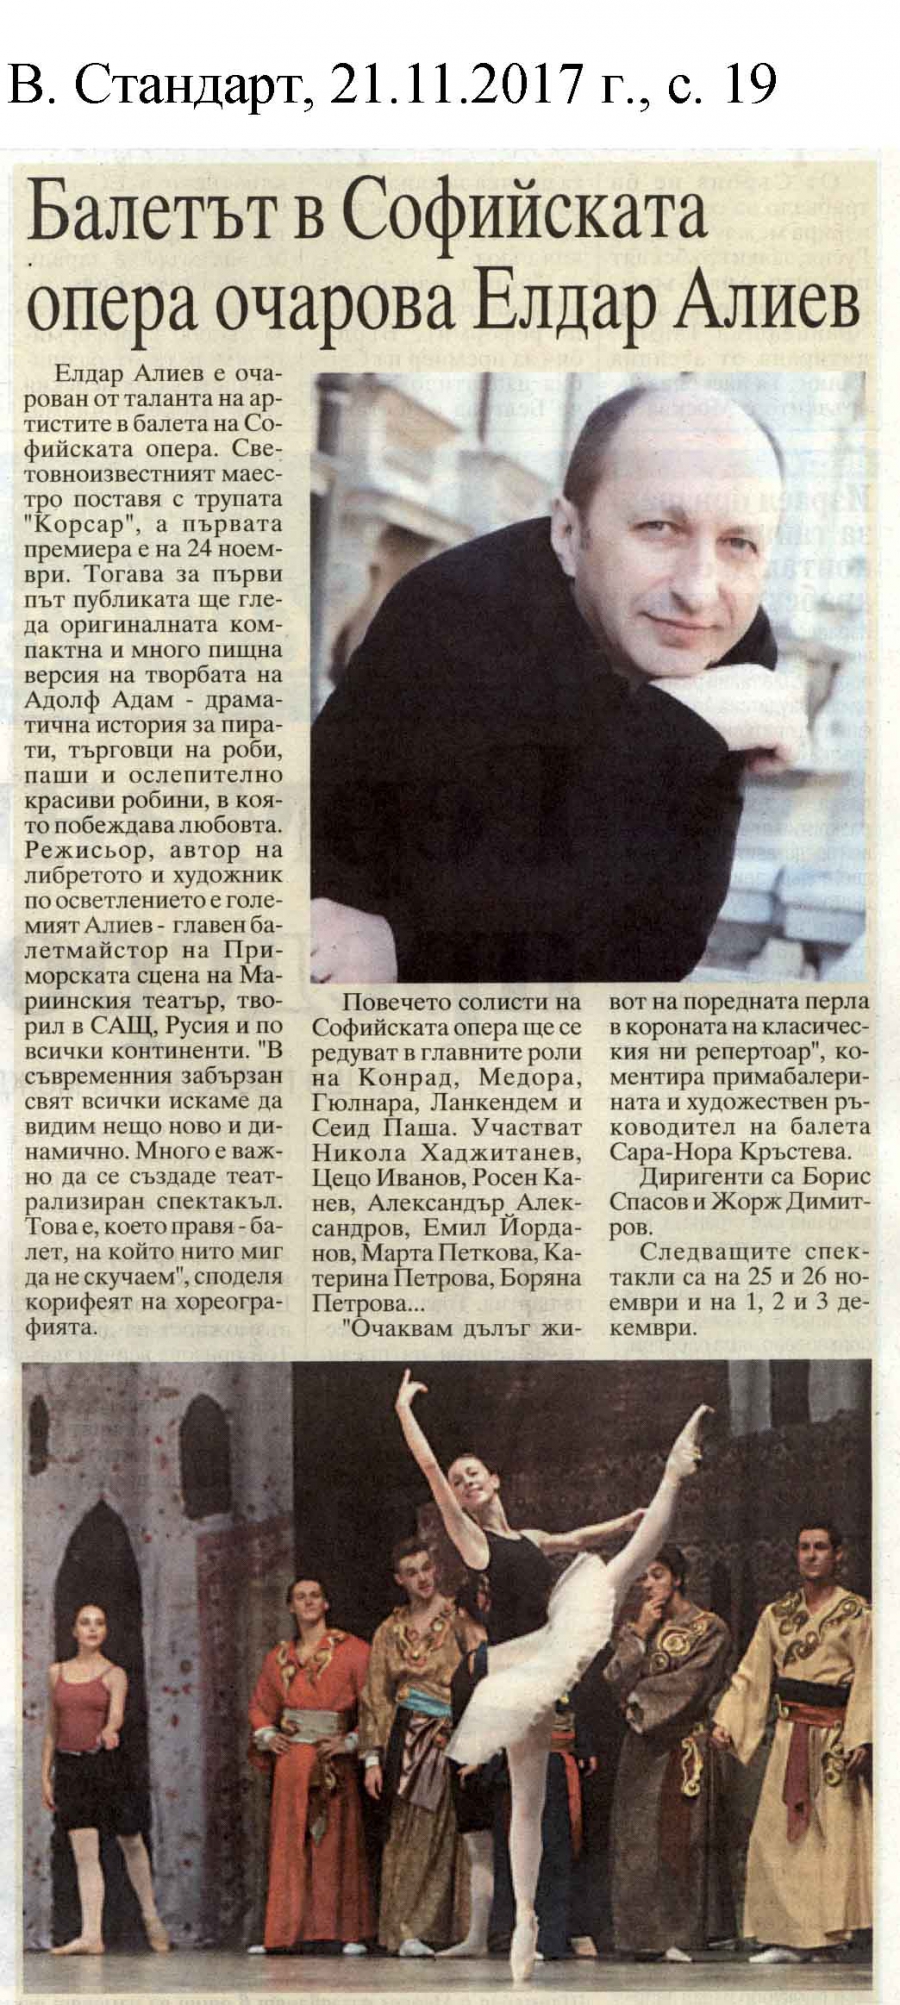 в. Стандарт - Балетът в Софийската опера очарова Елдар Алиев